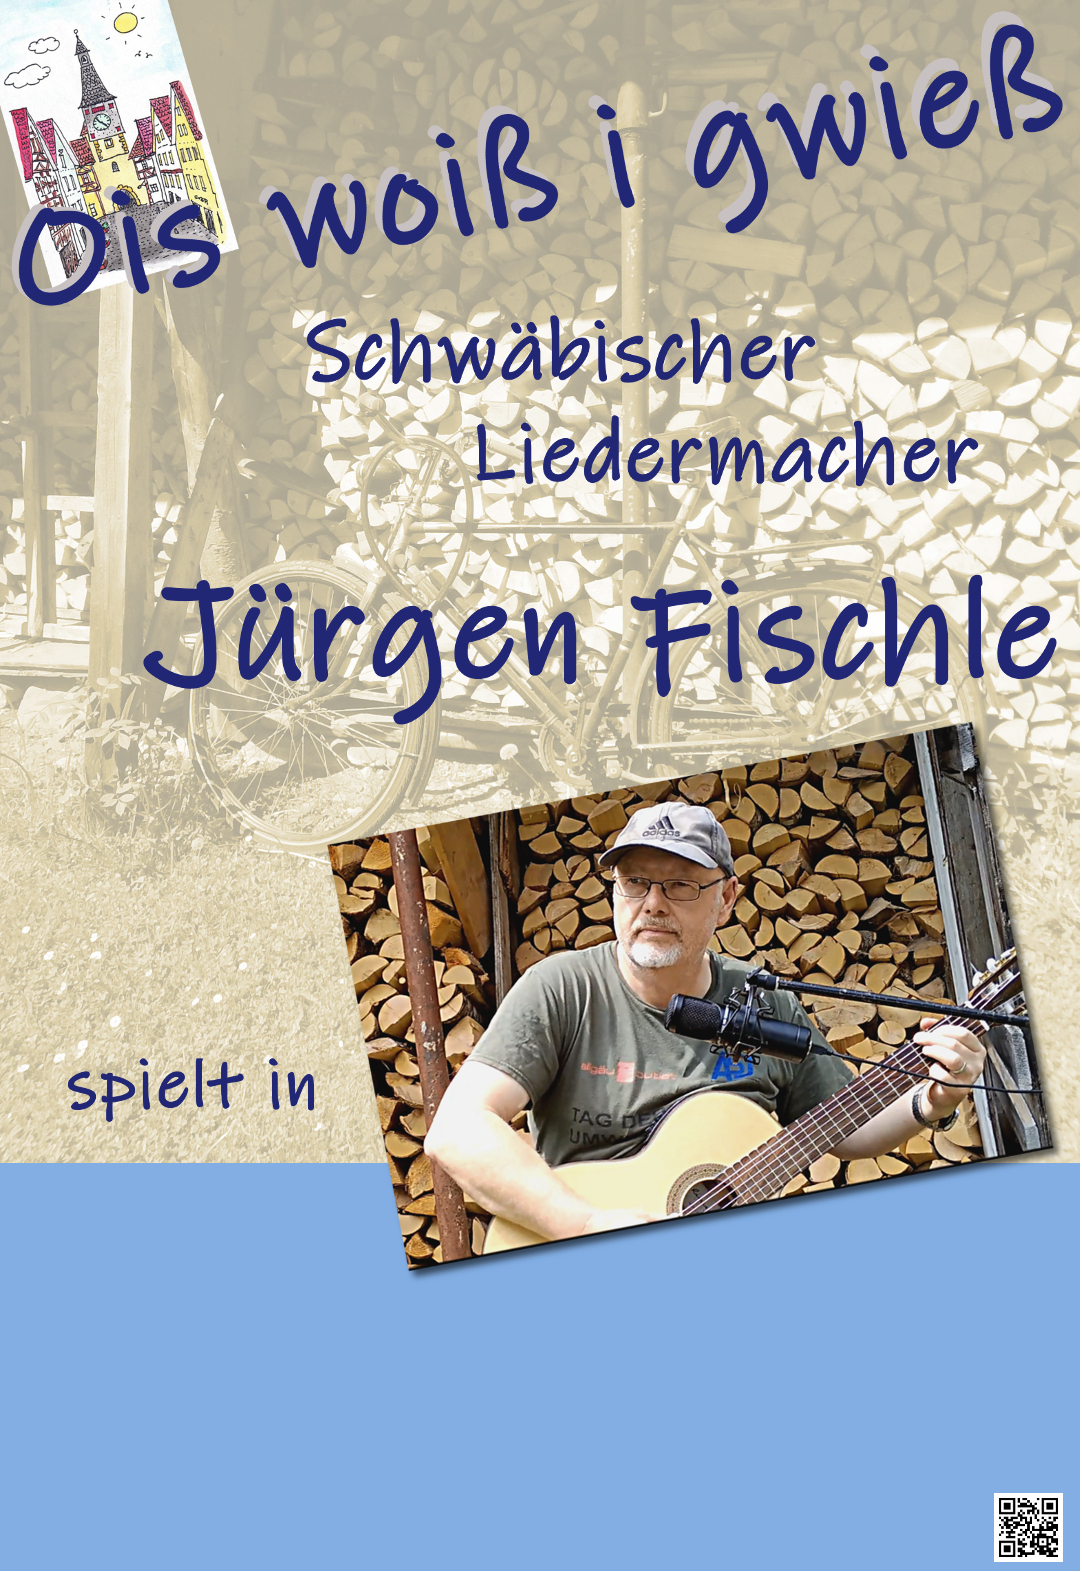 Jürgen Fischle live